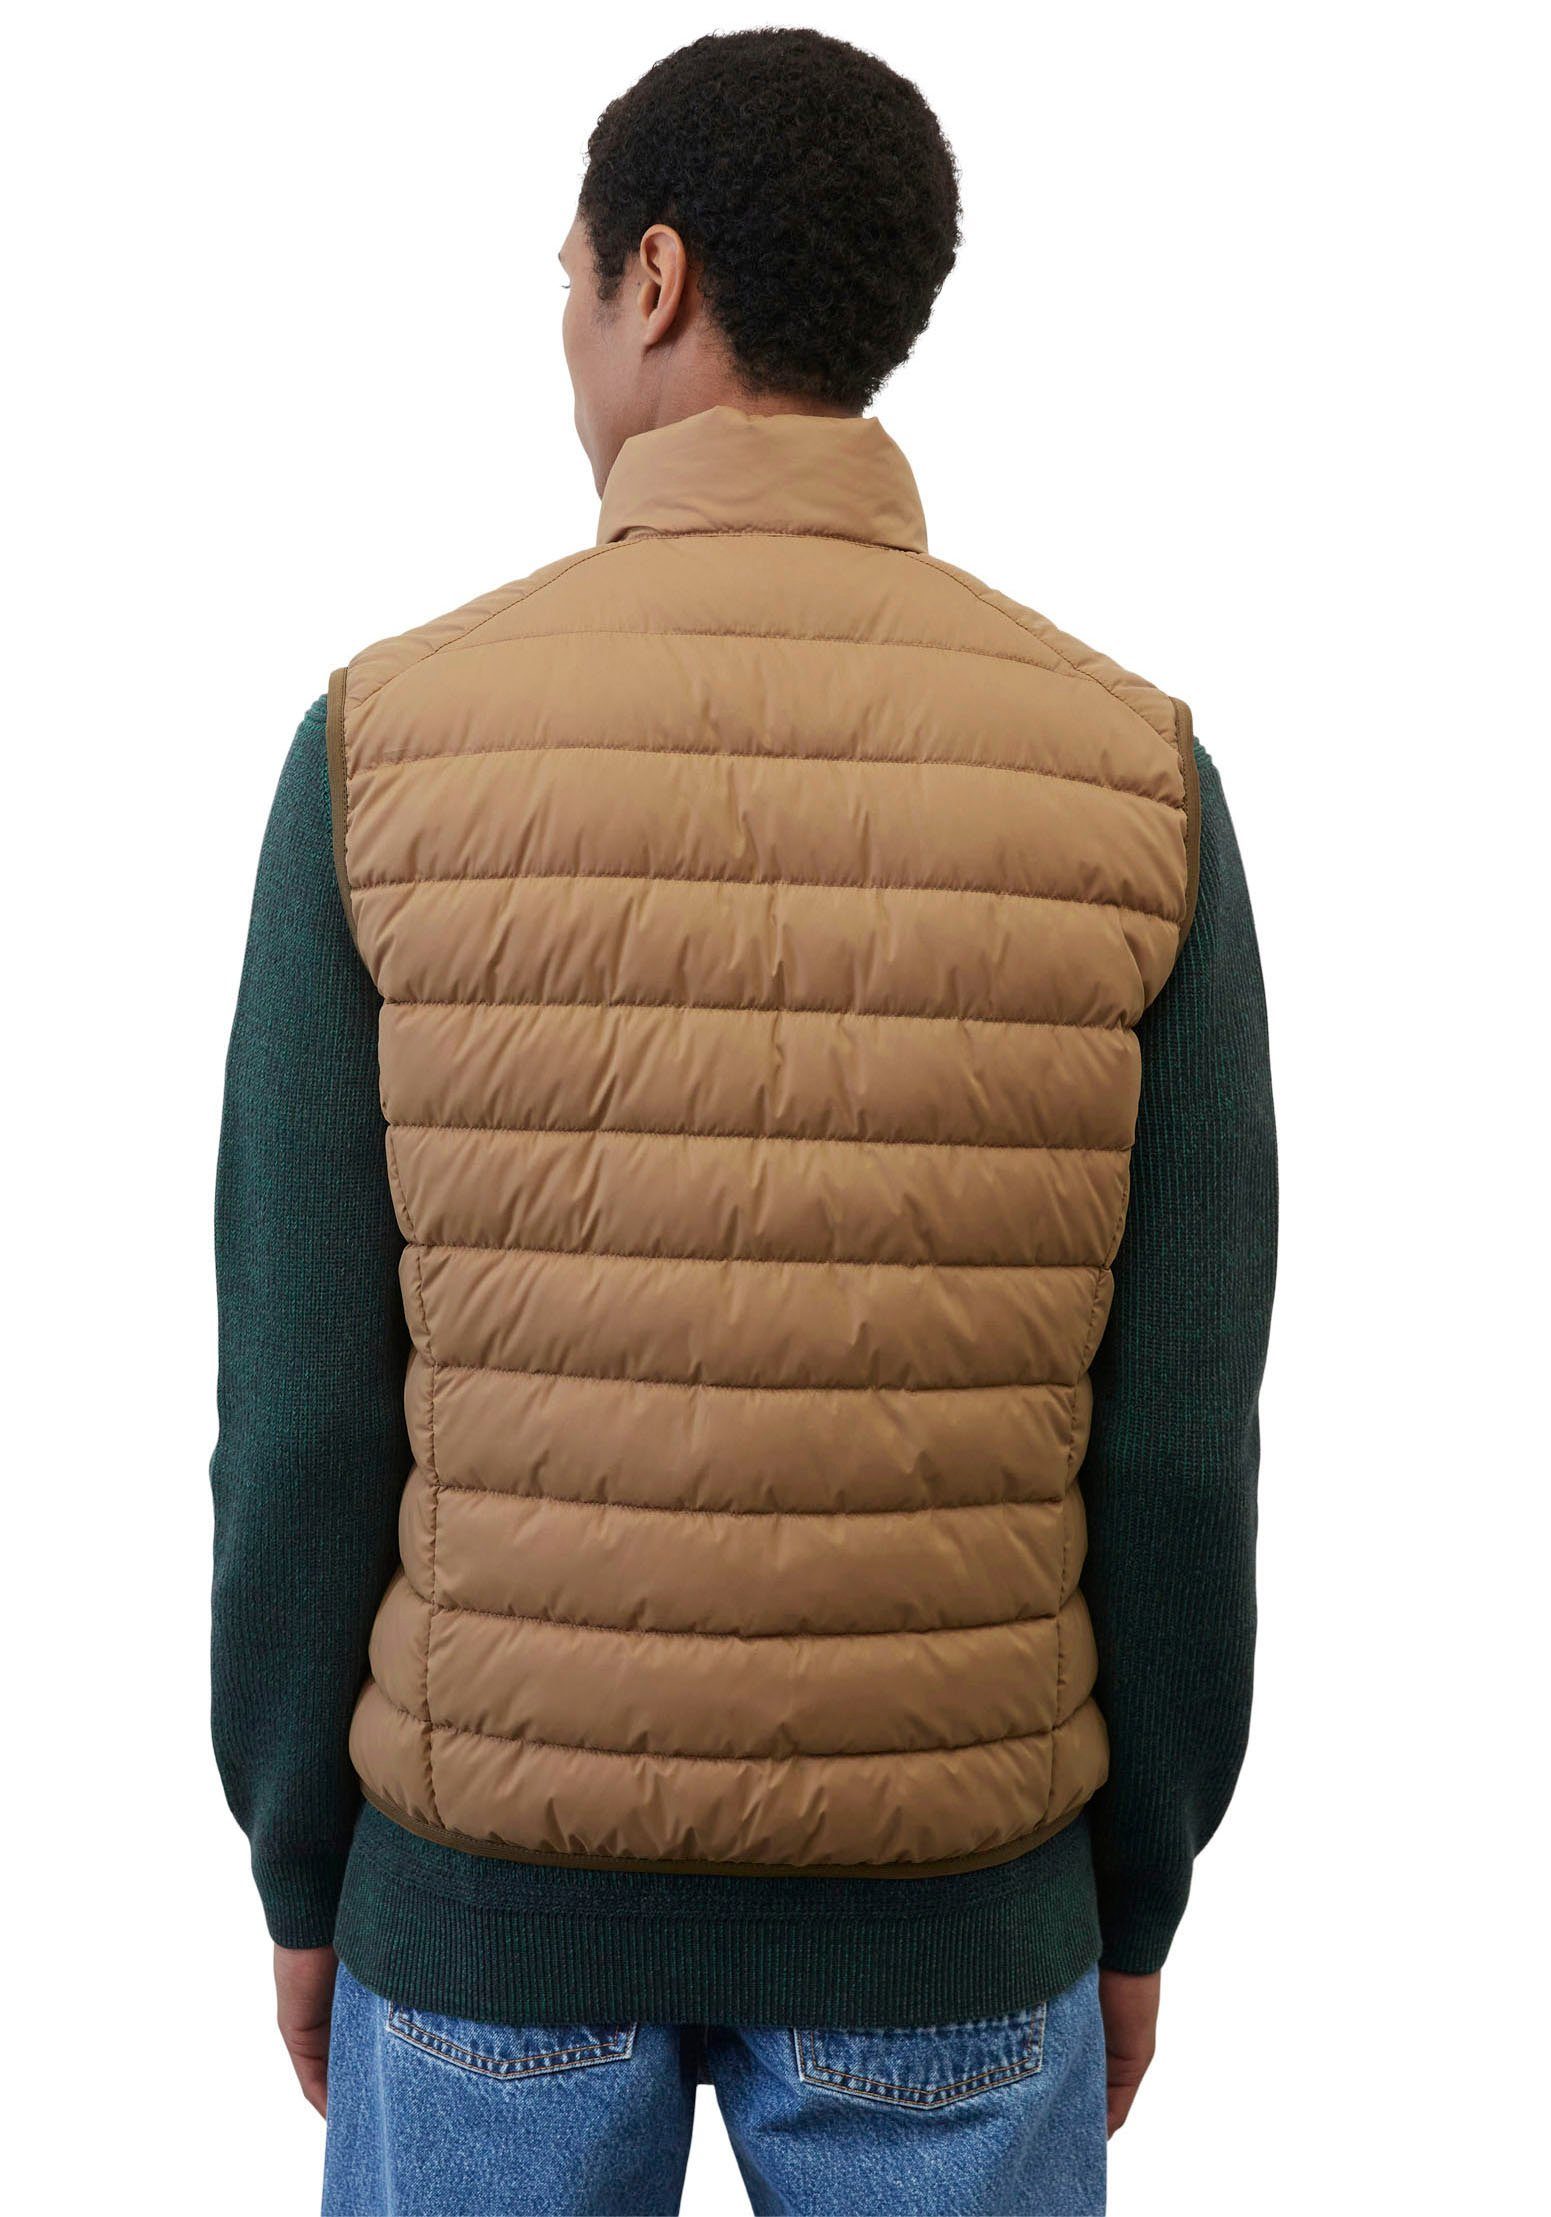 Marc O'Polo wasserabweisender collar stand-up casabella Vest, brown mit Steppweste Oberfläche sdnd